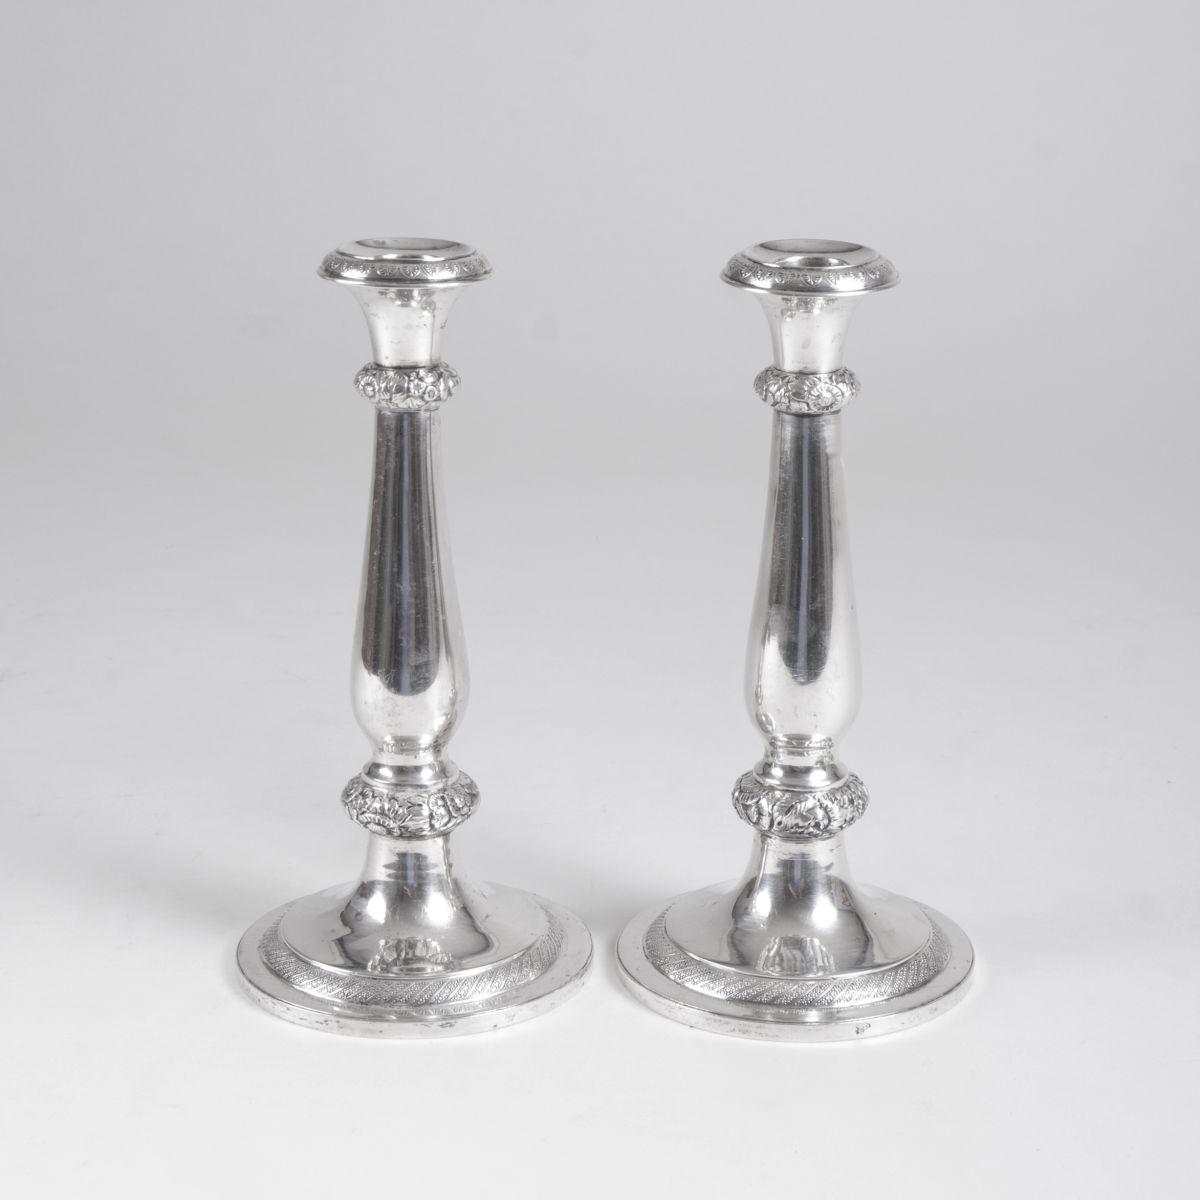 A pair of Biedermeier candlesticks from Vienna